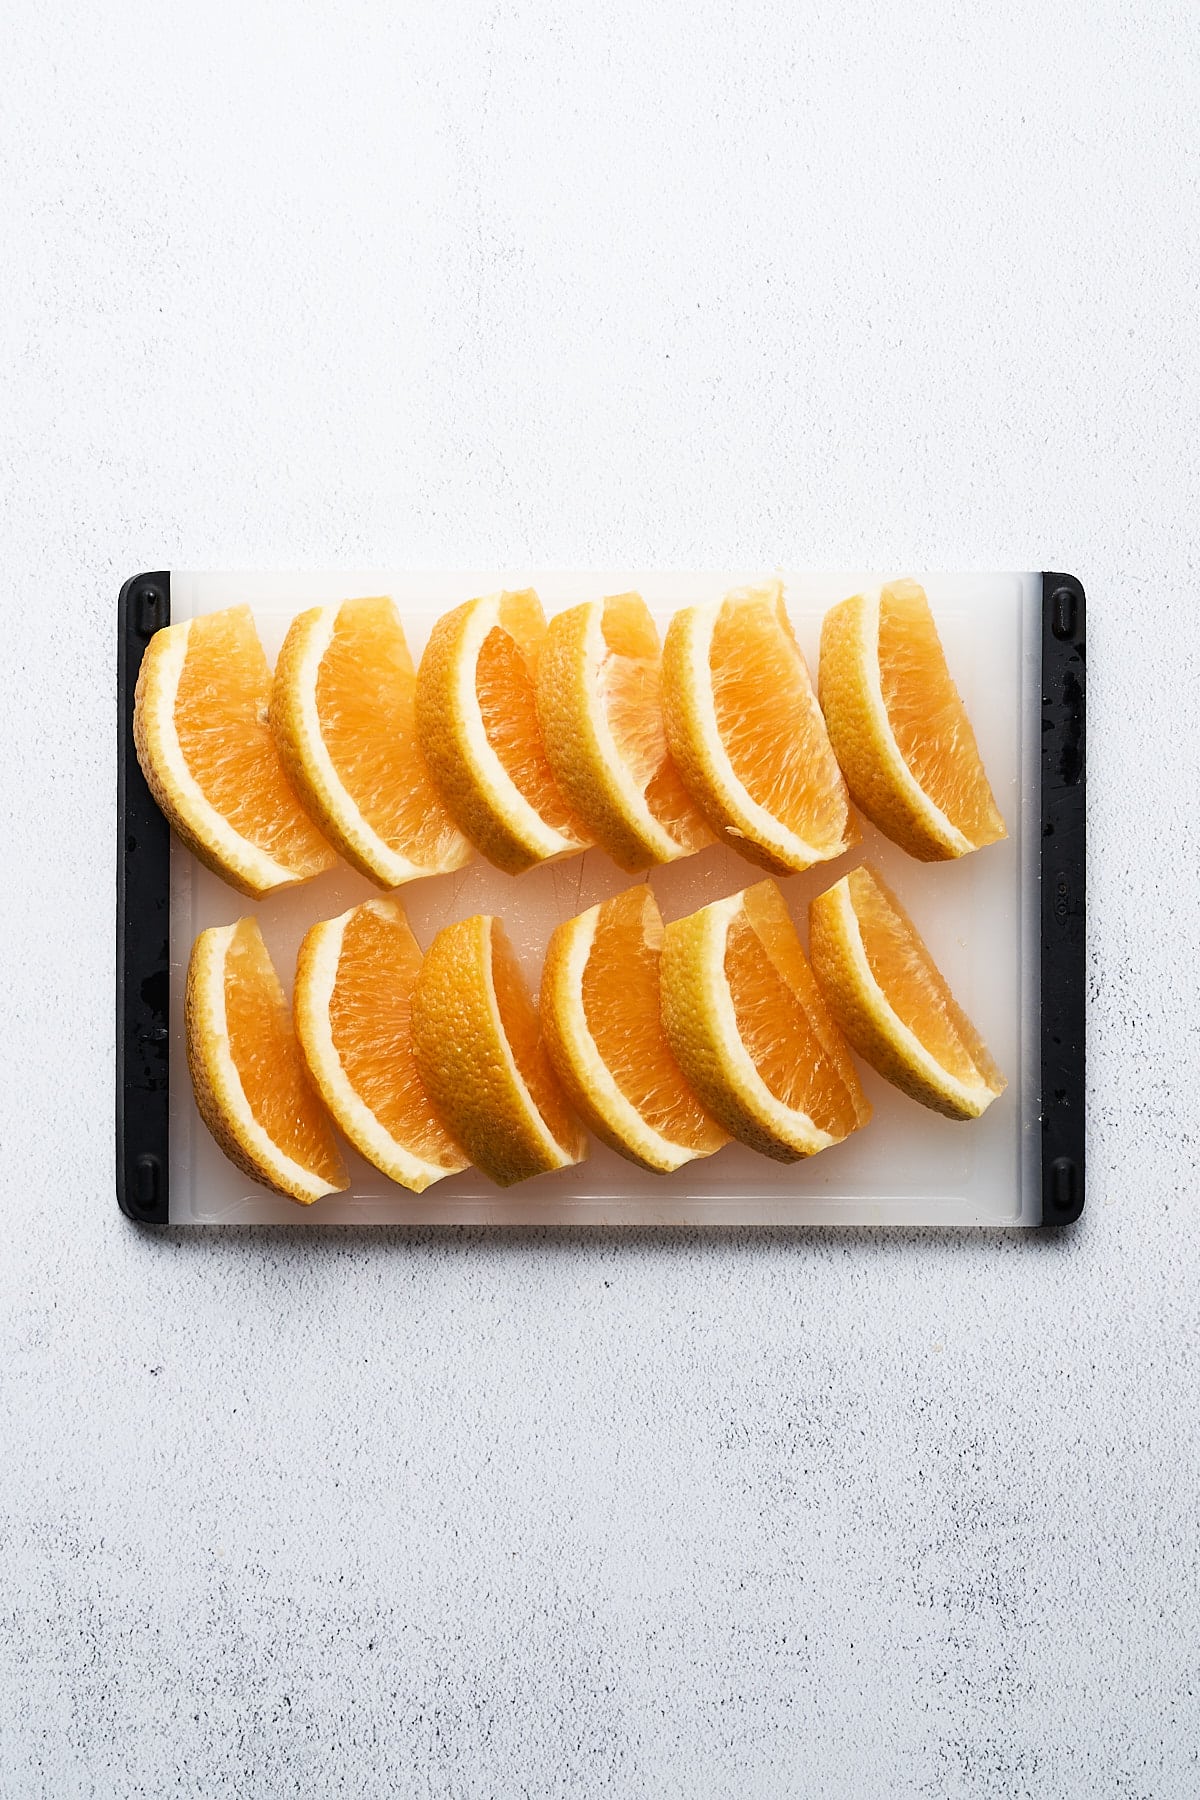 Orange wedges on a cutting board.